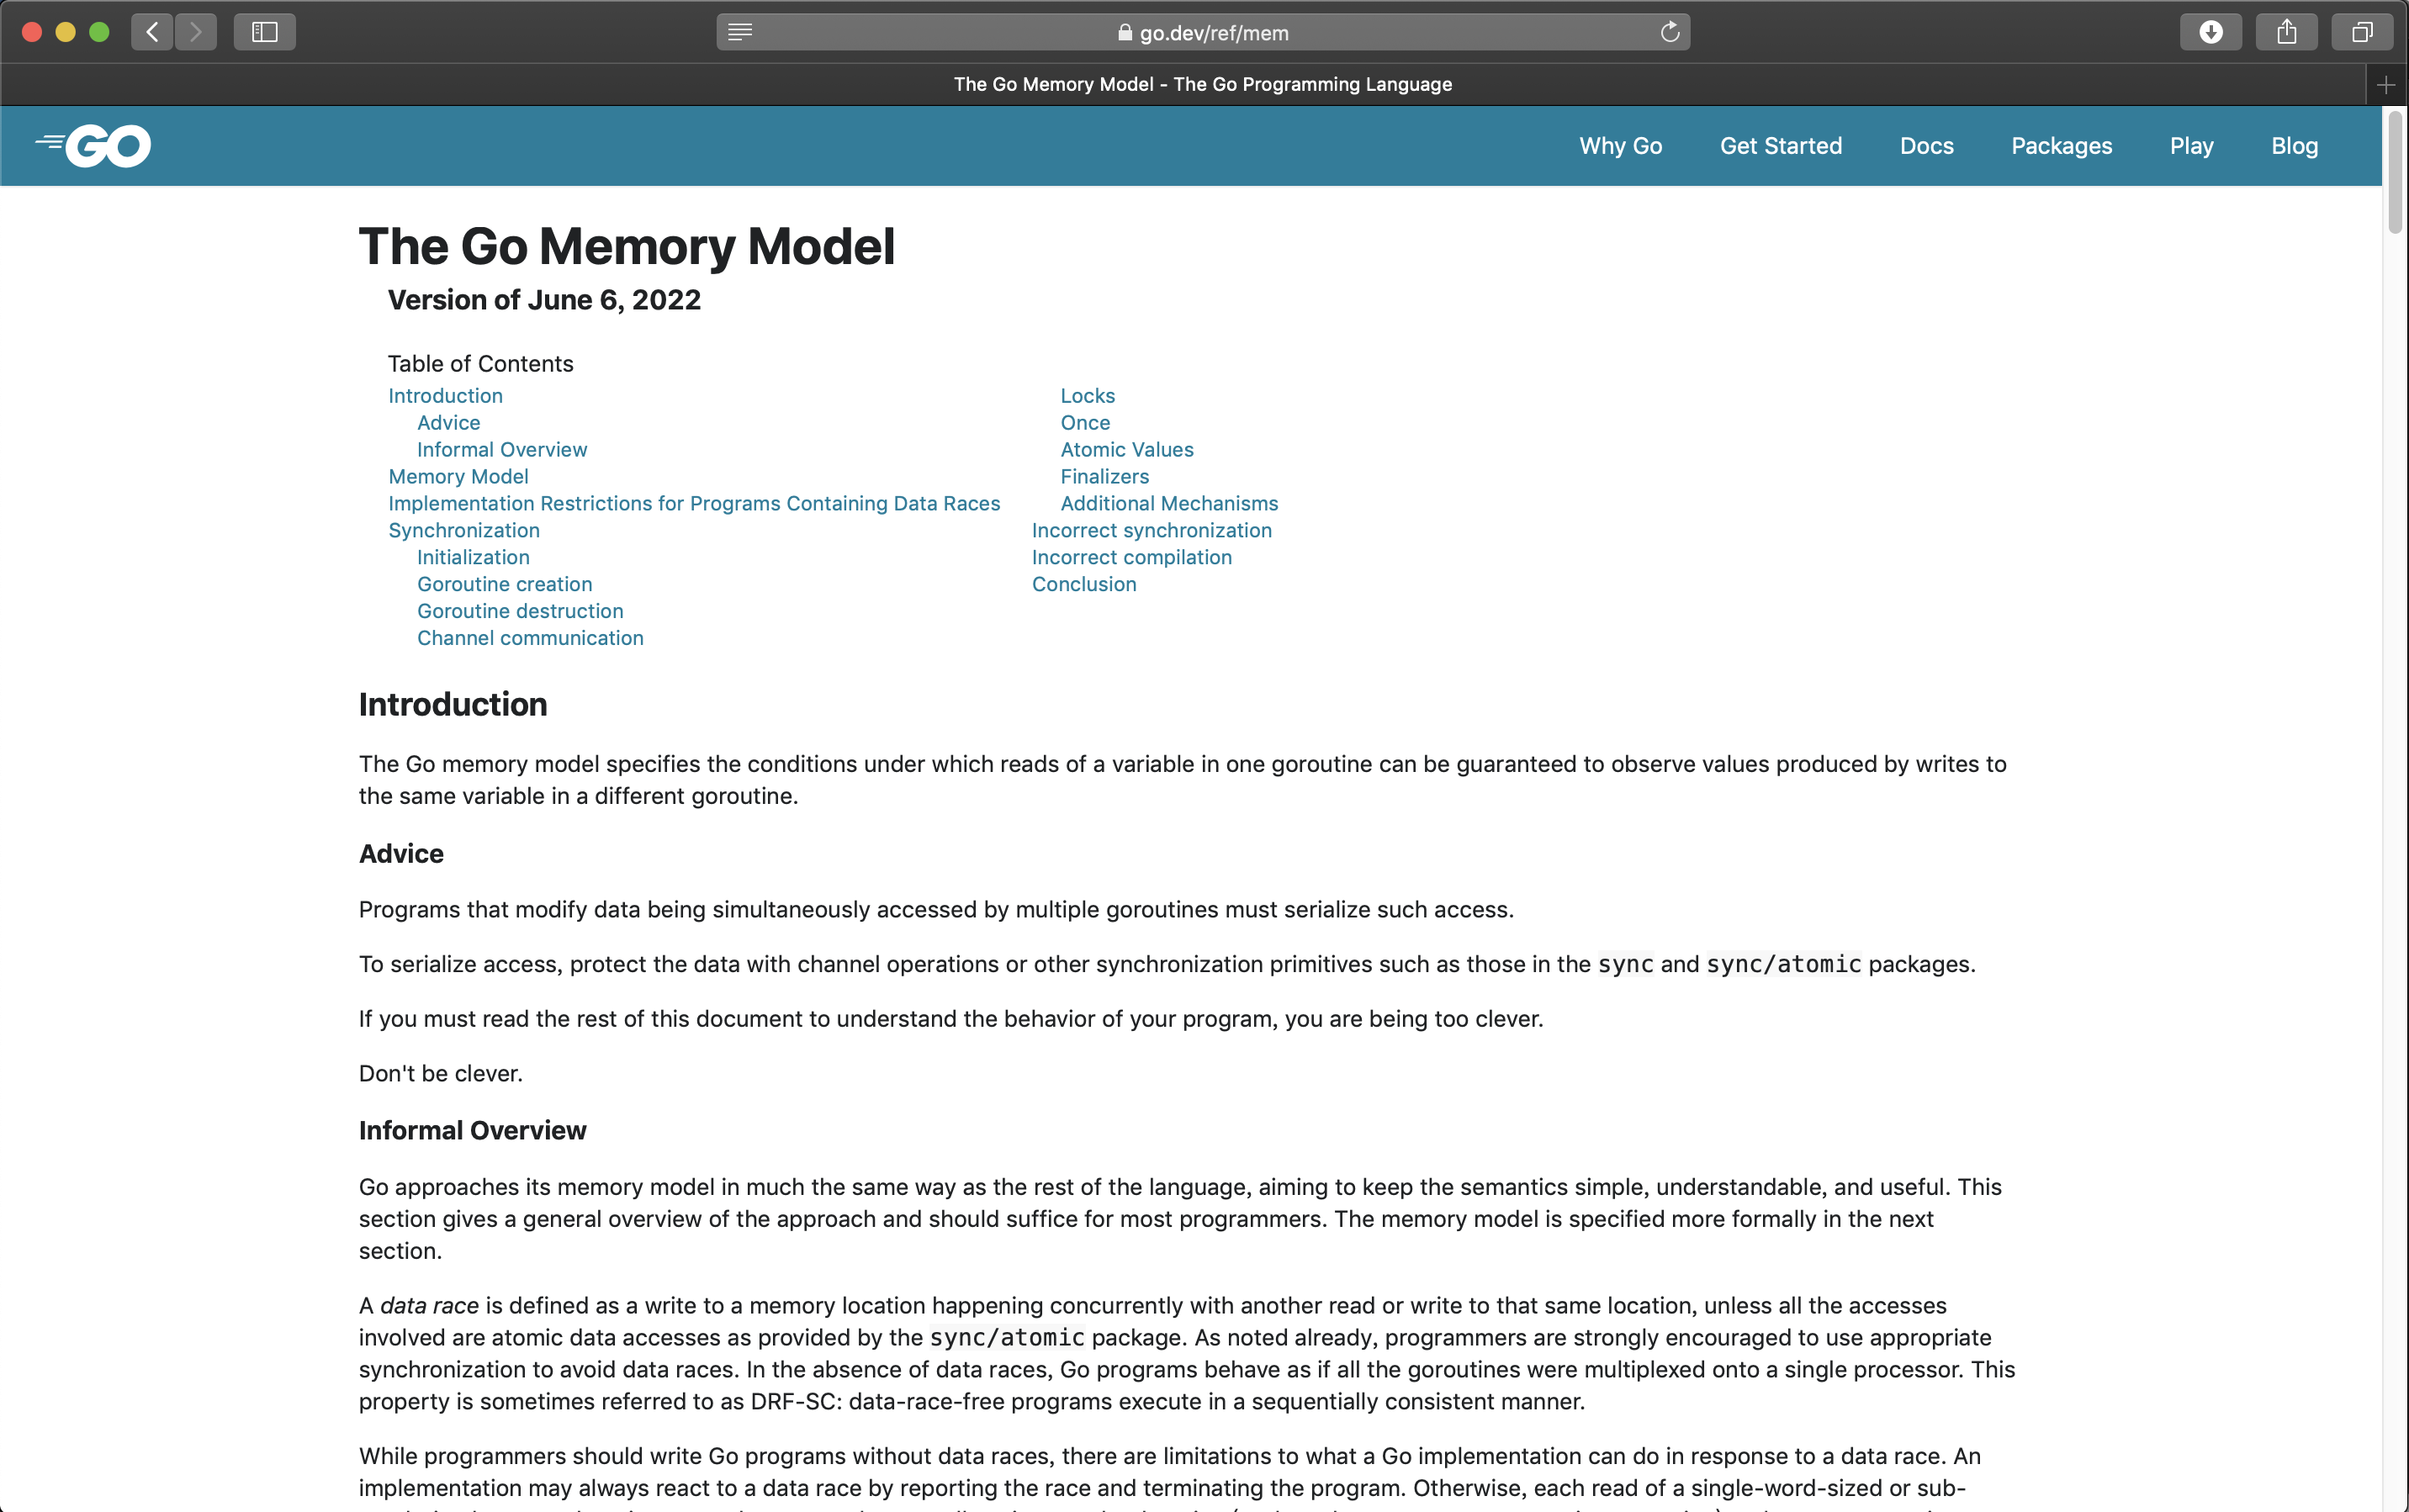 Revised memory model documentation